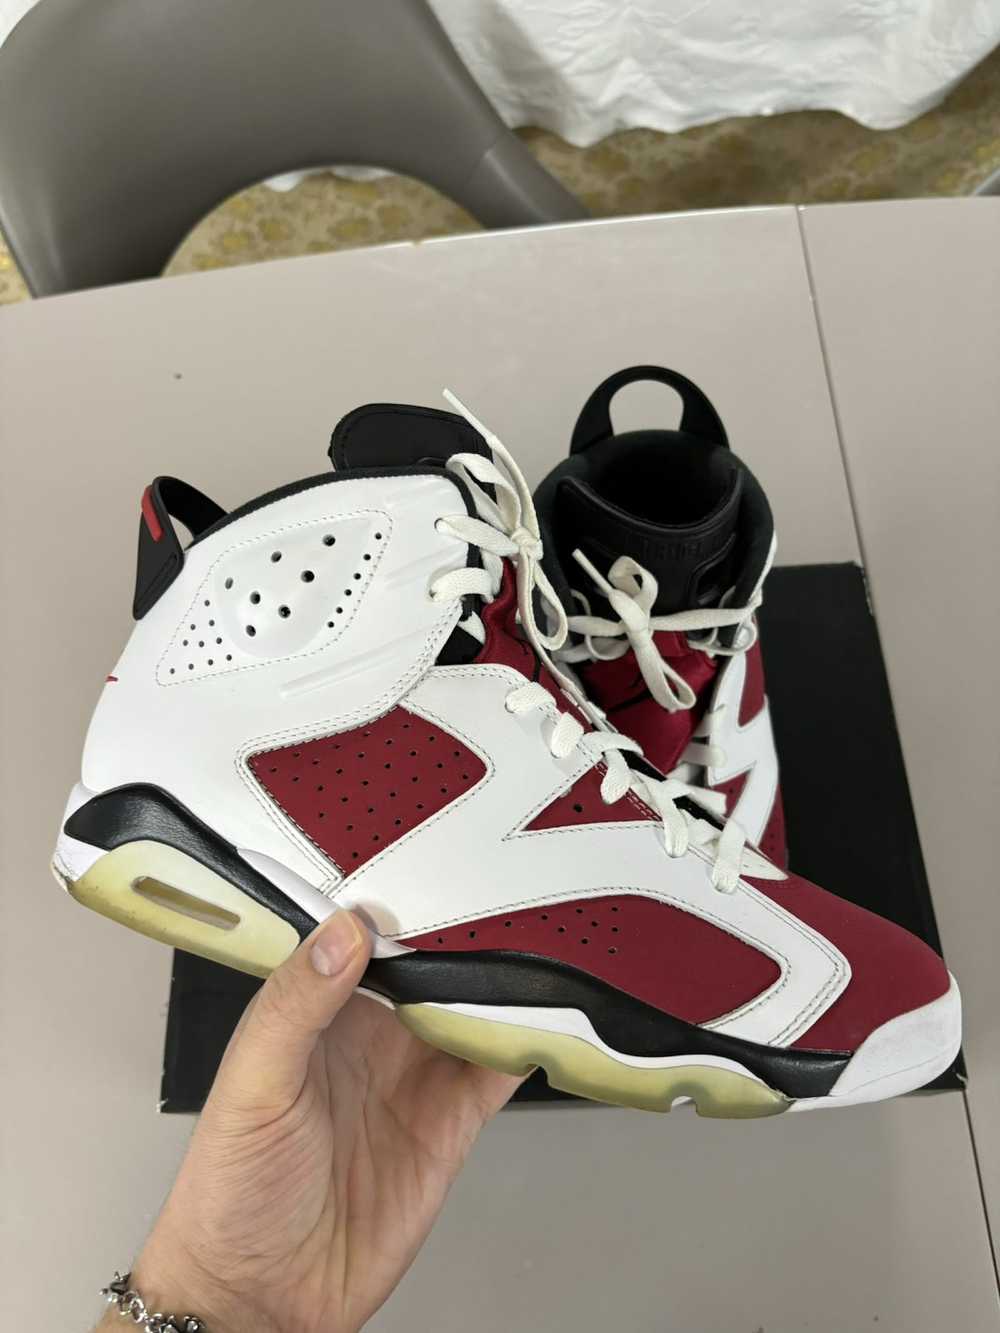 Jordan Brand × Nike 2020 Jordan 6s Carmine Sz11 - image 1